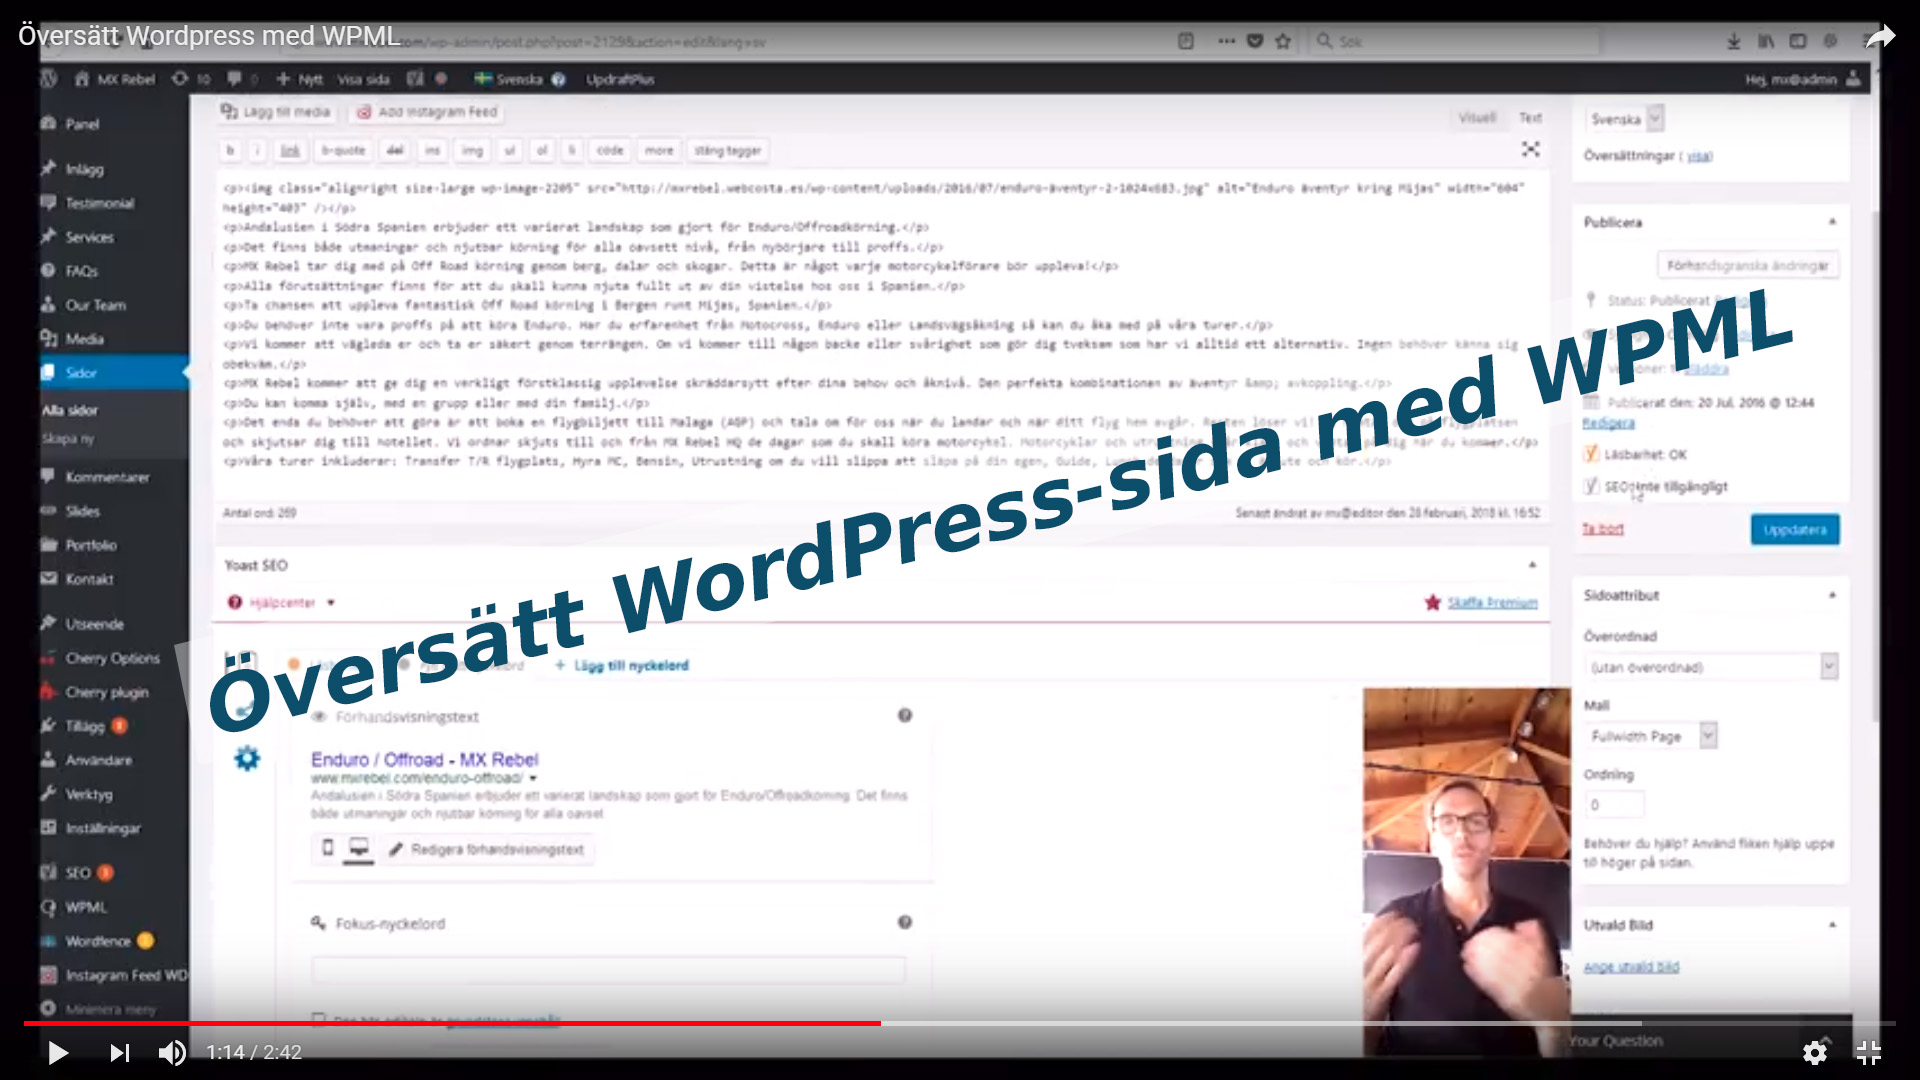 Översätt WordPress-sida med WPML